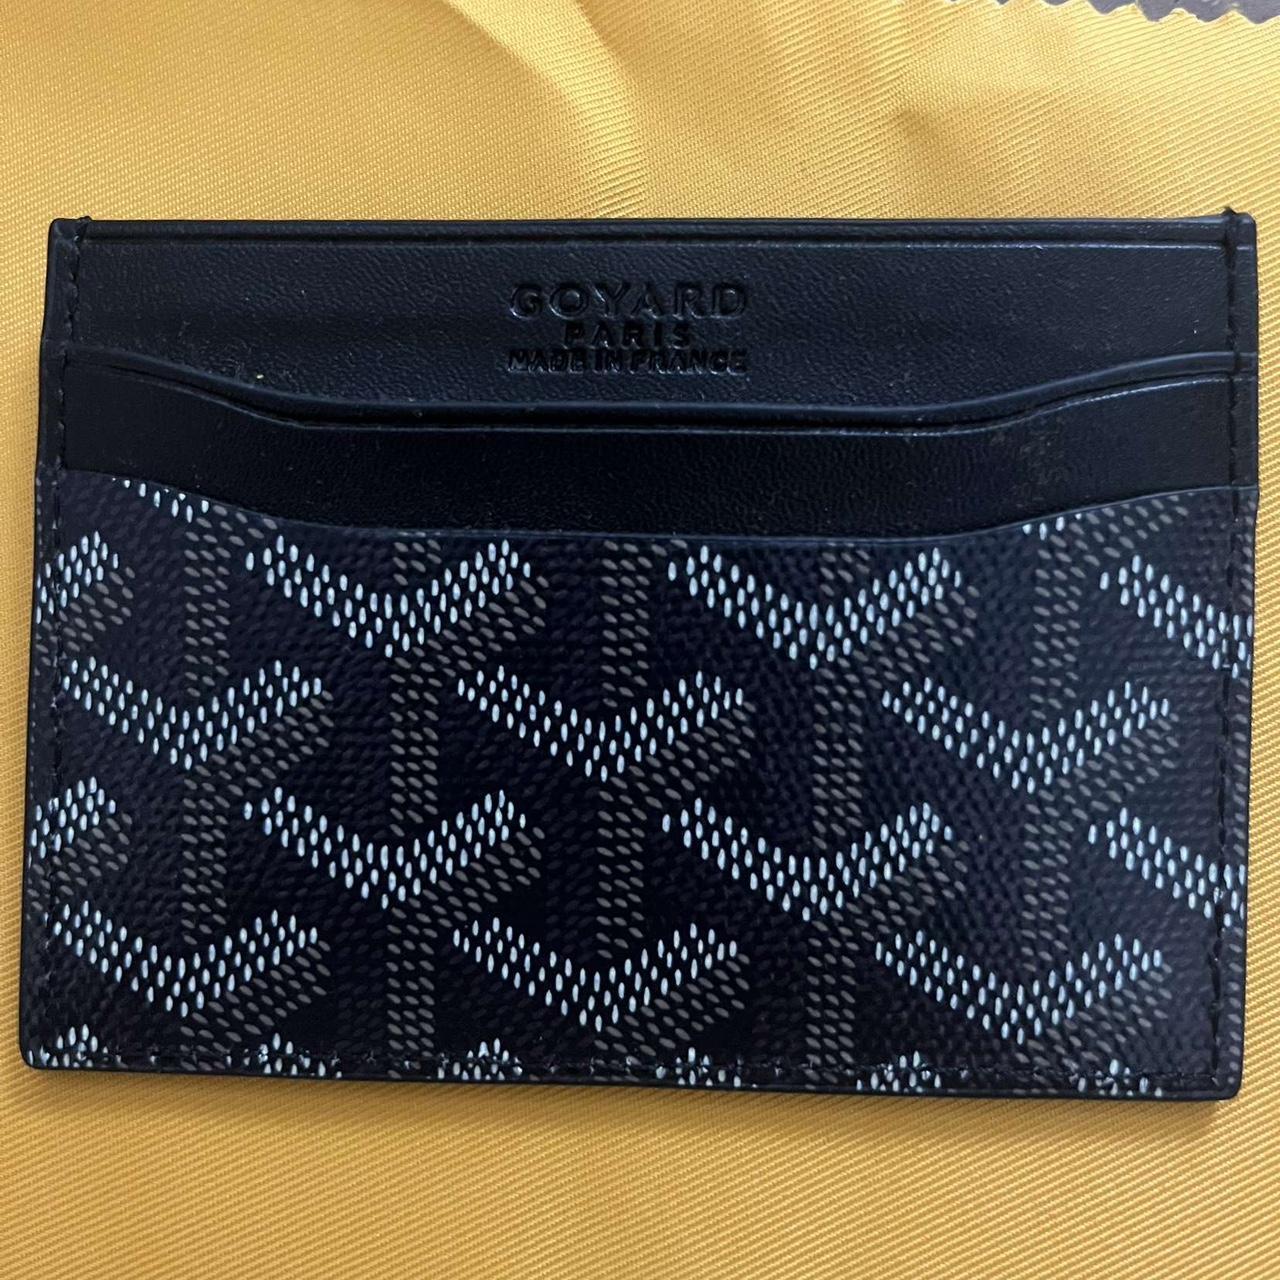 Goyard Wallet / Card Holder - Depop